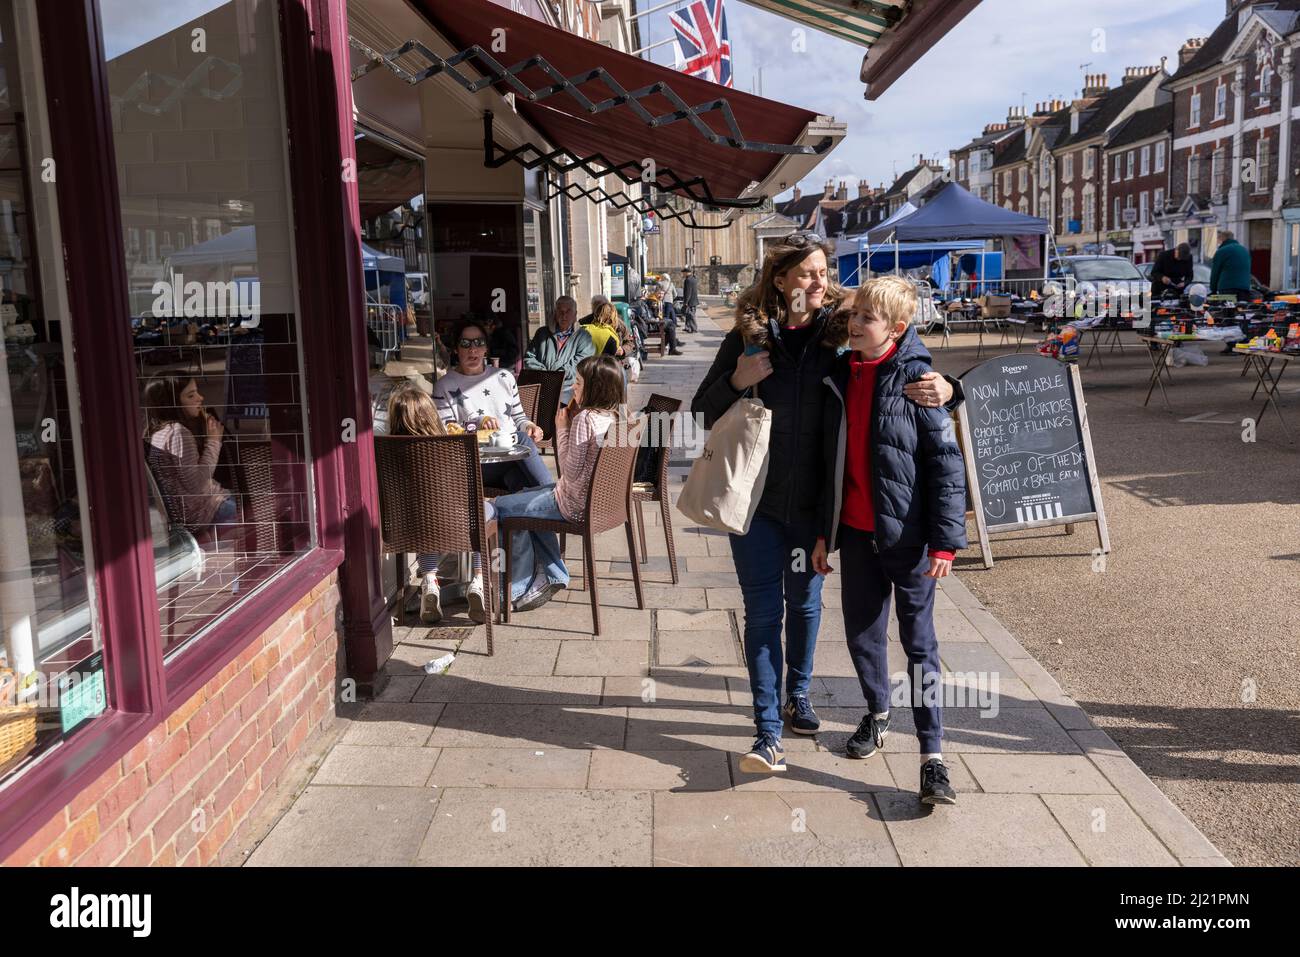 Mère et son fils se promeblent dans une rue de campagne, Blandford Forum, Dorset, Angleterre, Royaume-Uni Banque D'Images